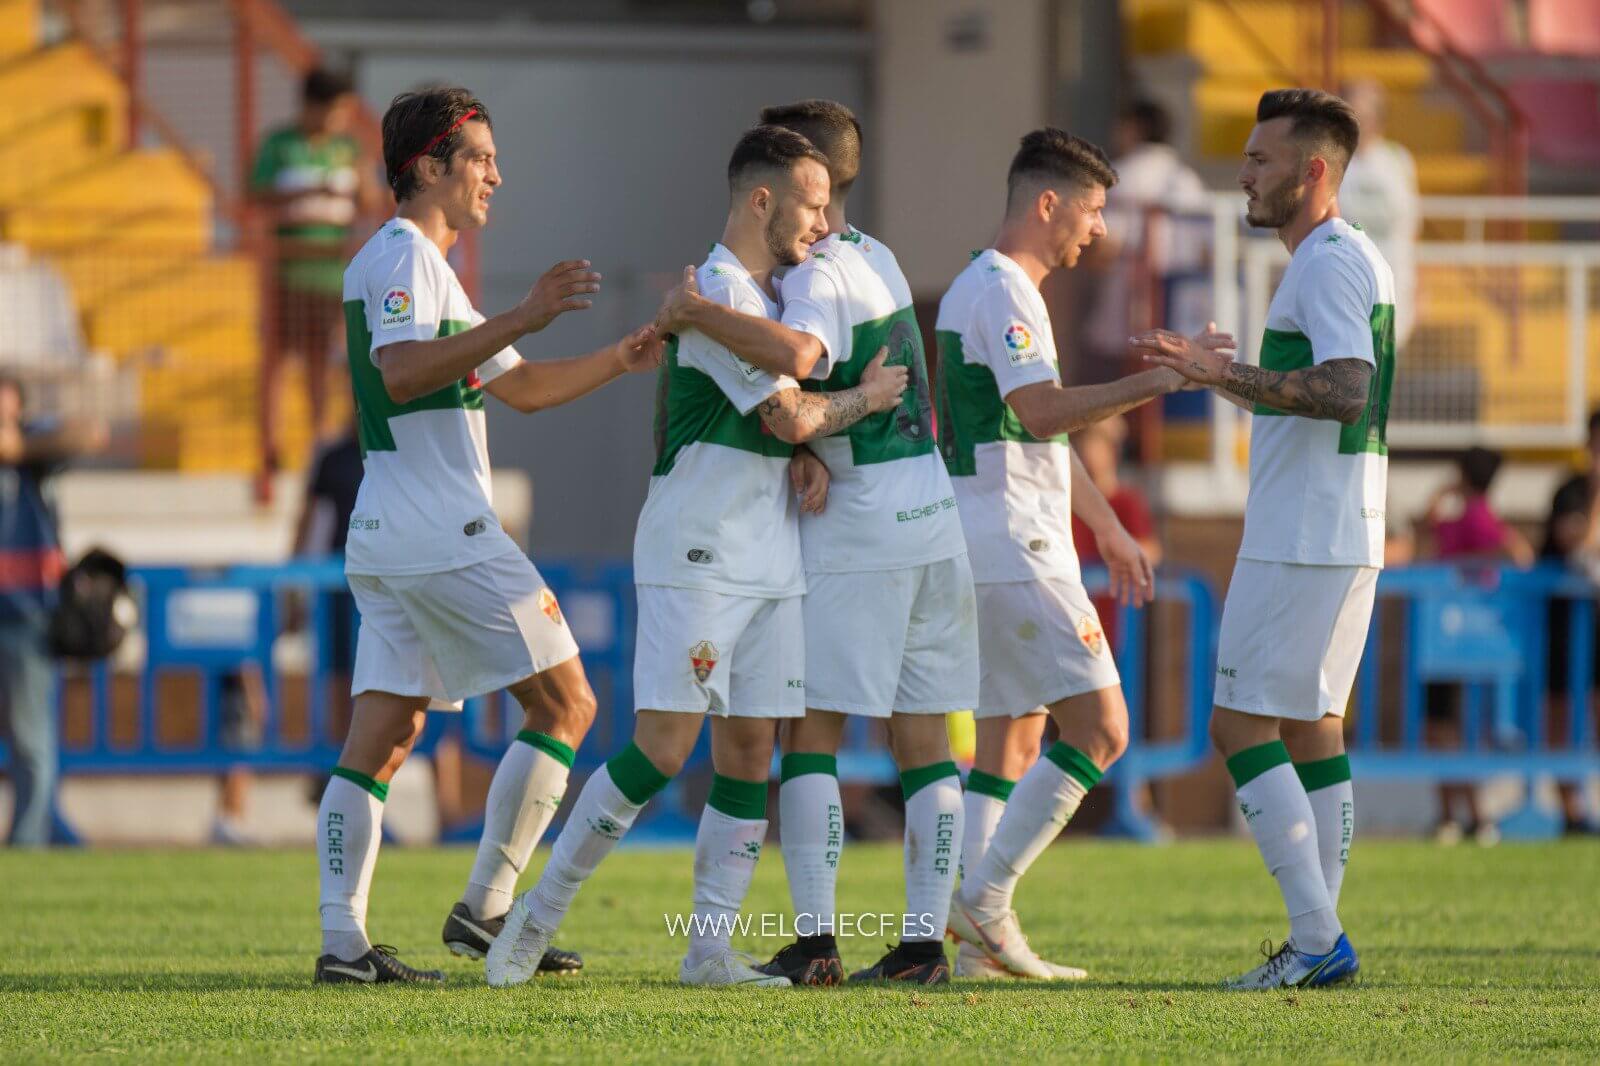 Los jugadores del Elche celebran un gol al Intercity en Santa Pola / Sonia Arcos - Elche CF